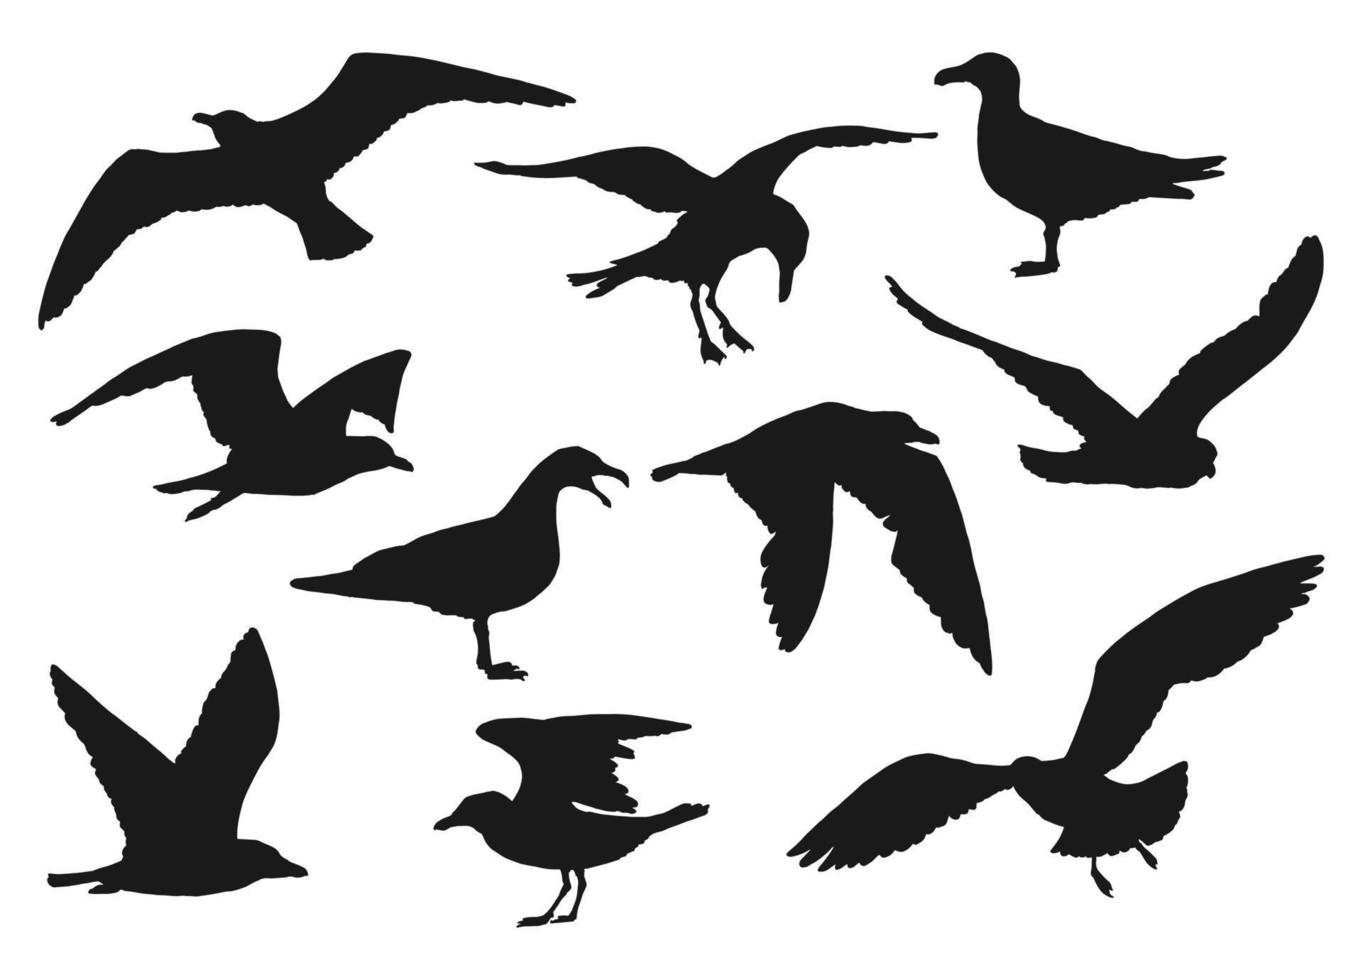 Reihe von Silhouetten fliegender Möwen. handgezeichnete illustration in vektor umgewandelt.